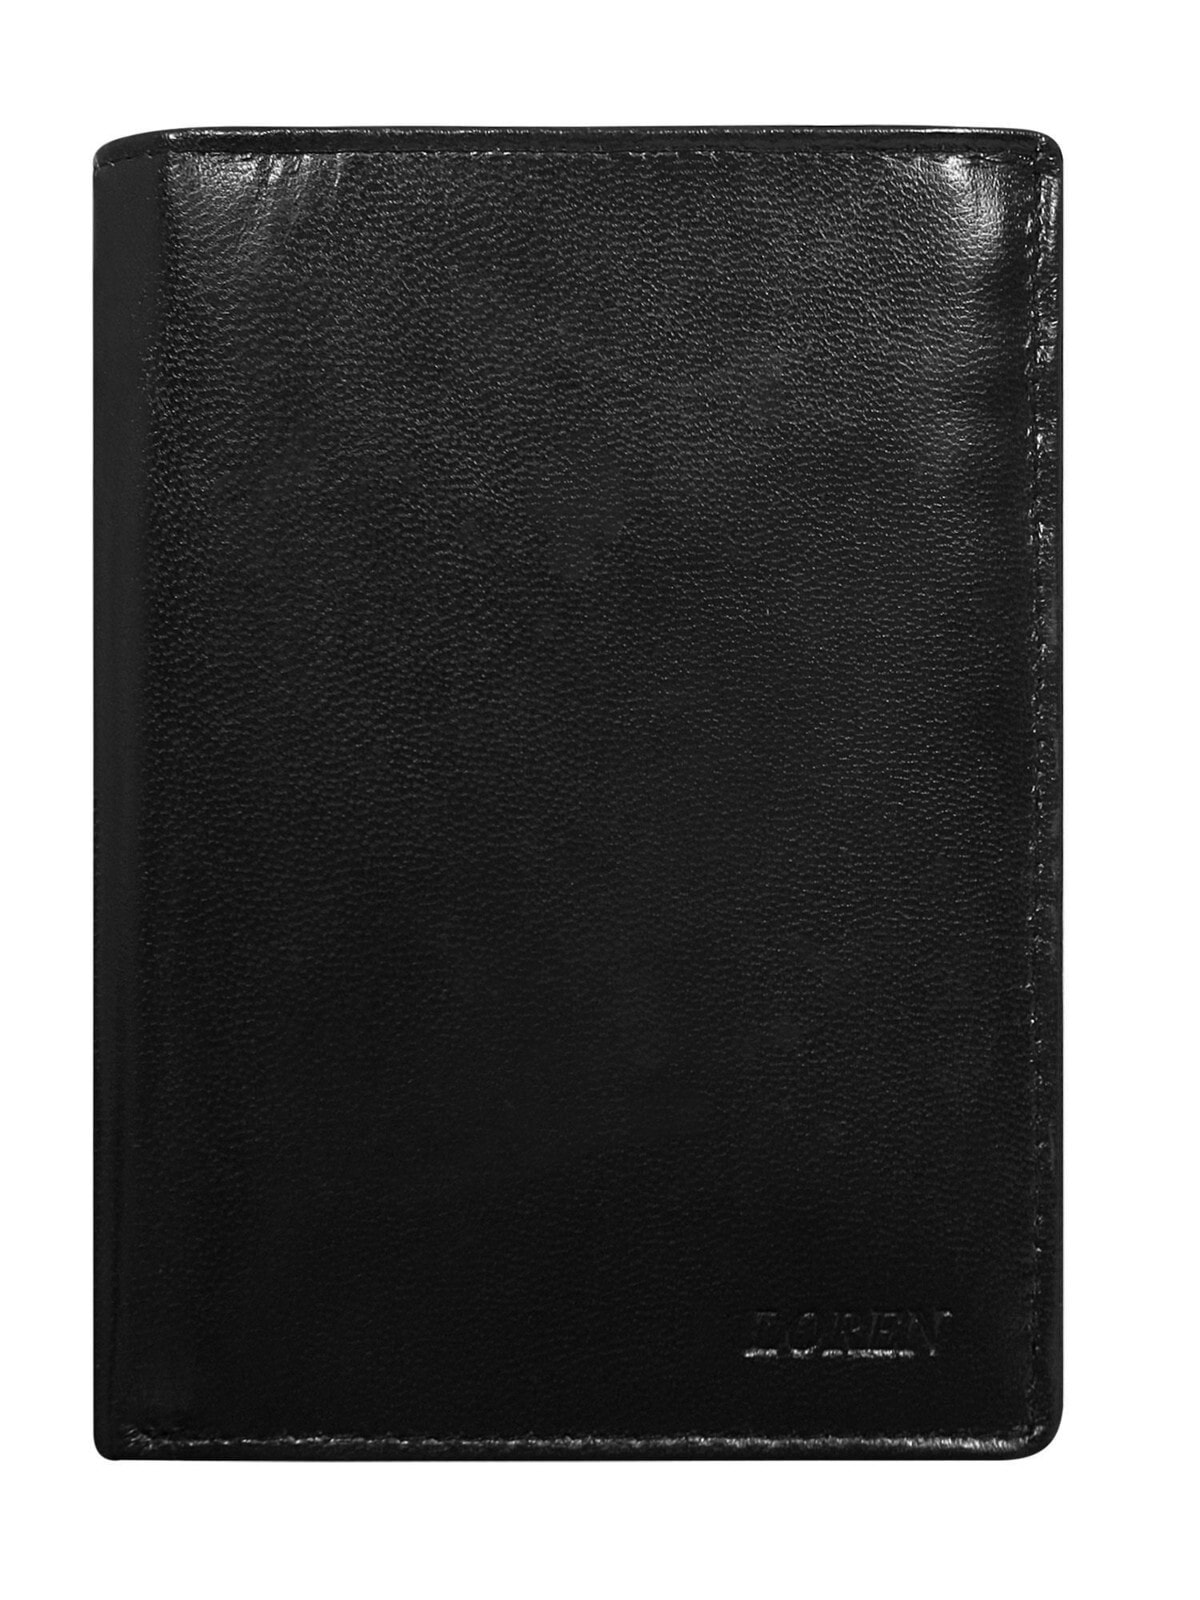 Мужское портмоне кожаное черное вертикальное без застежки  Factory Price Portfel-CE-PF-326-GAN.80-czarny